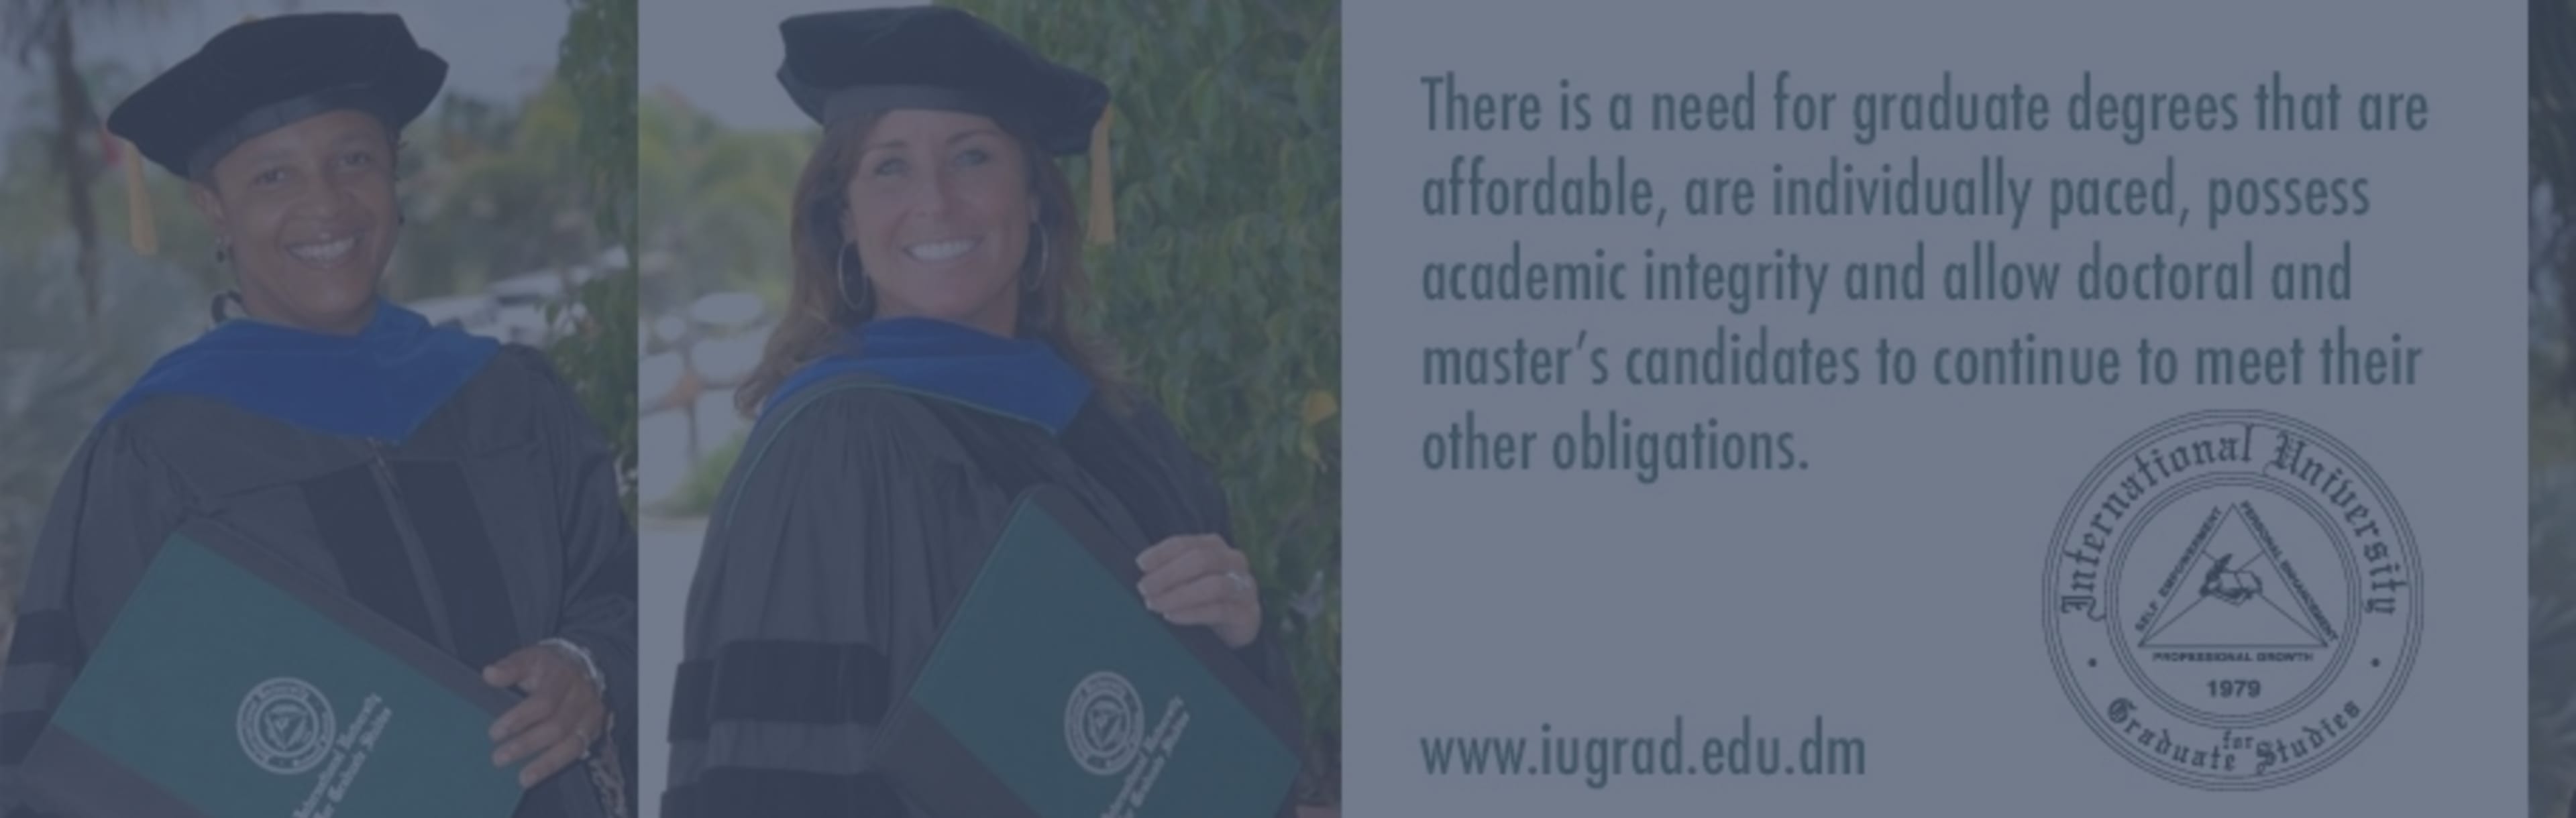 International University For Graduate Studies -  IUGS Doktorát v oblasti řízení a aplikované ekonomie